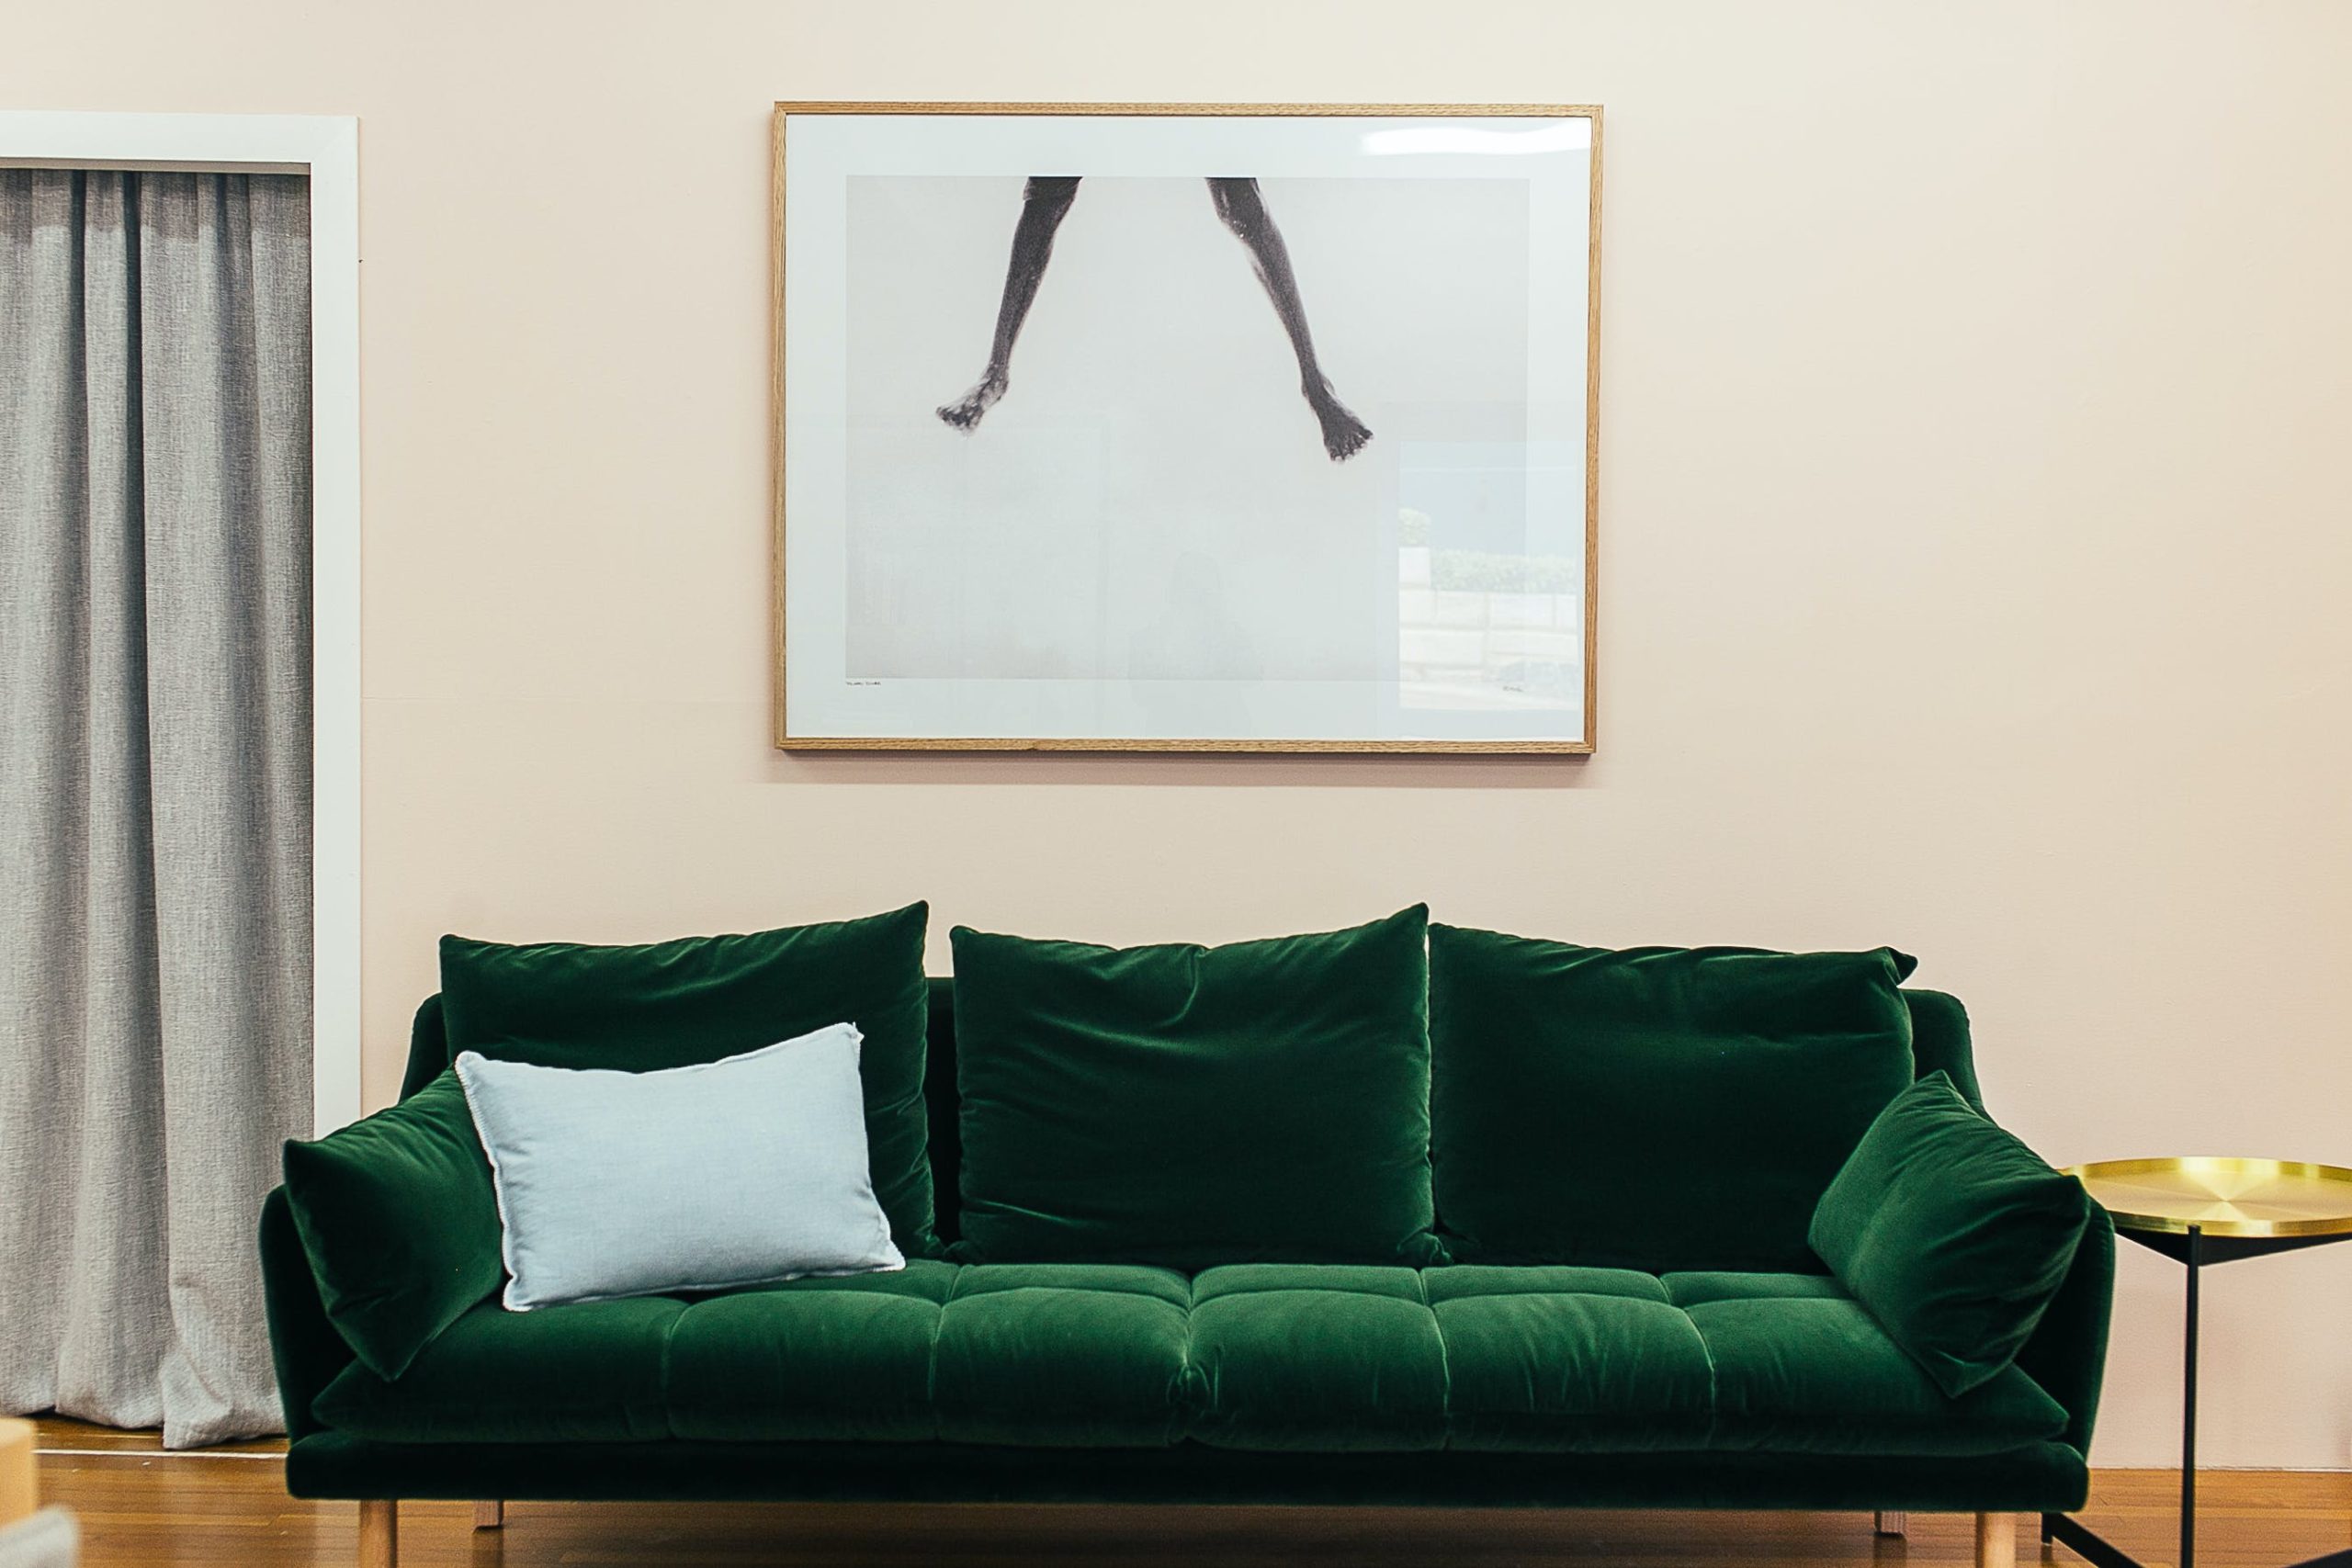 Apartamento moderno con sofá verde elegante y elementos decorativos creativos.